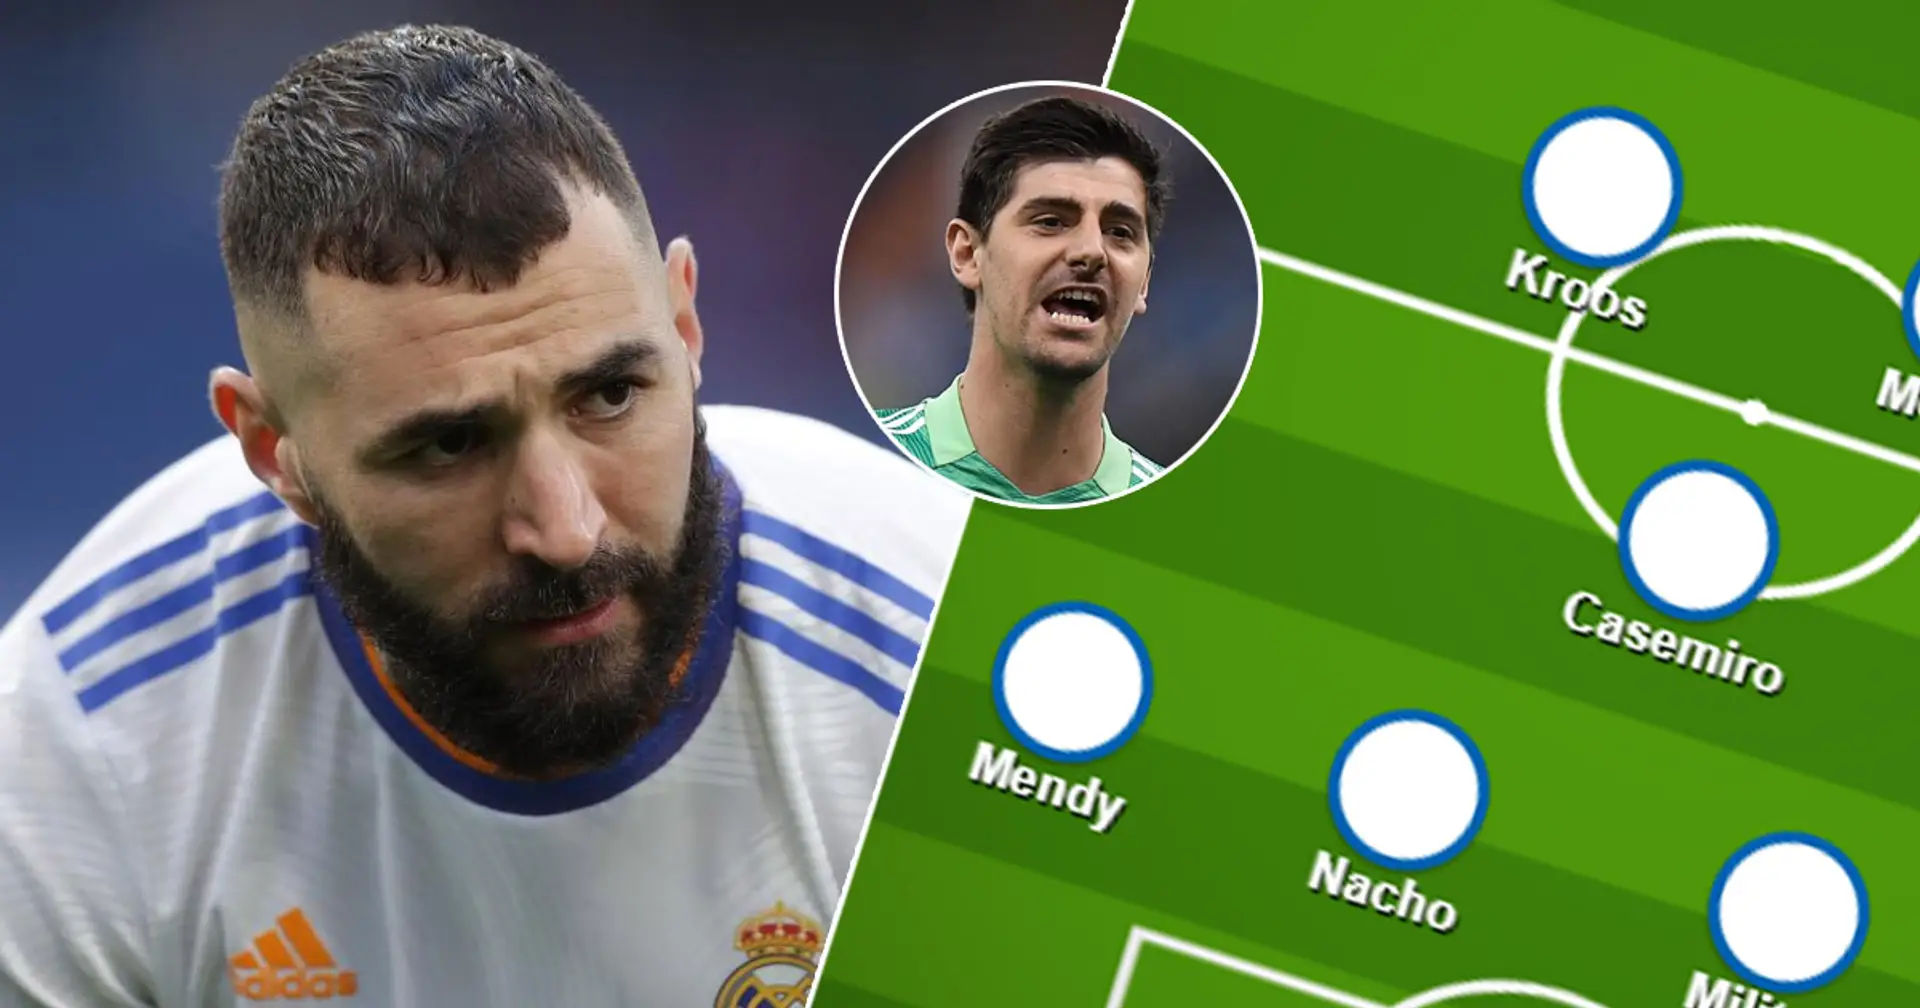 ¿El XI más fuerte o rotaciones? Elige tu XI favorito del Real Madrid para el partido vs Levante entre 2 opciones